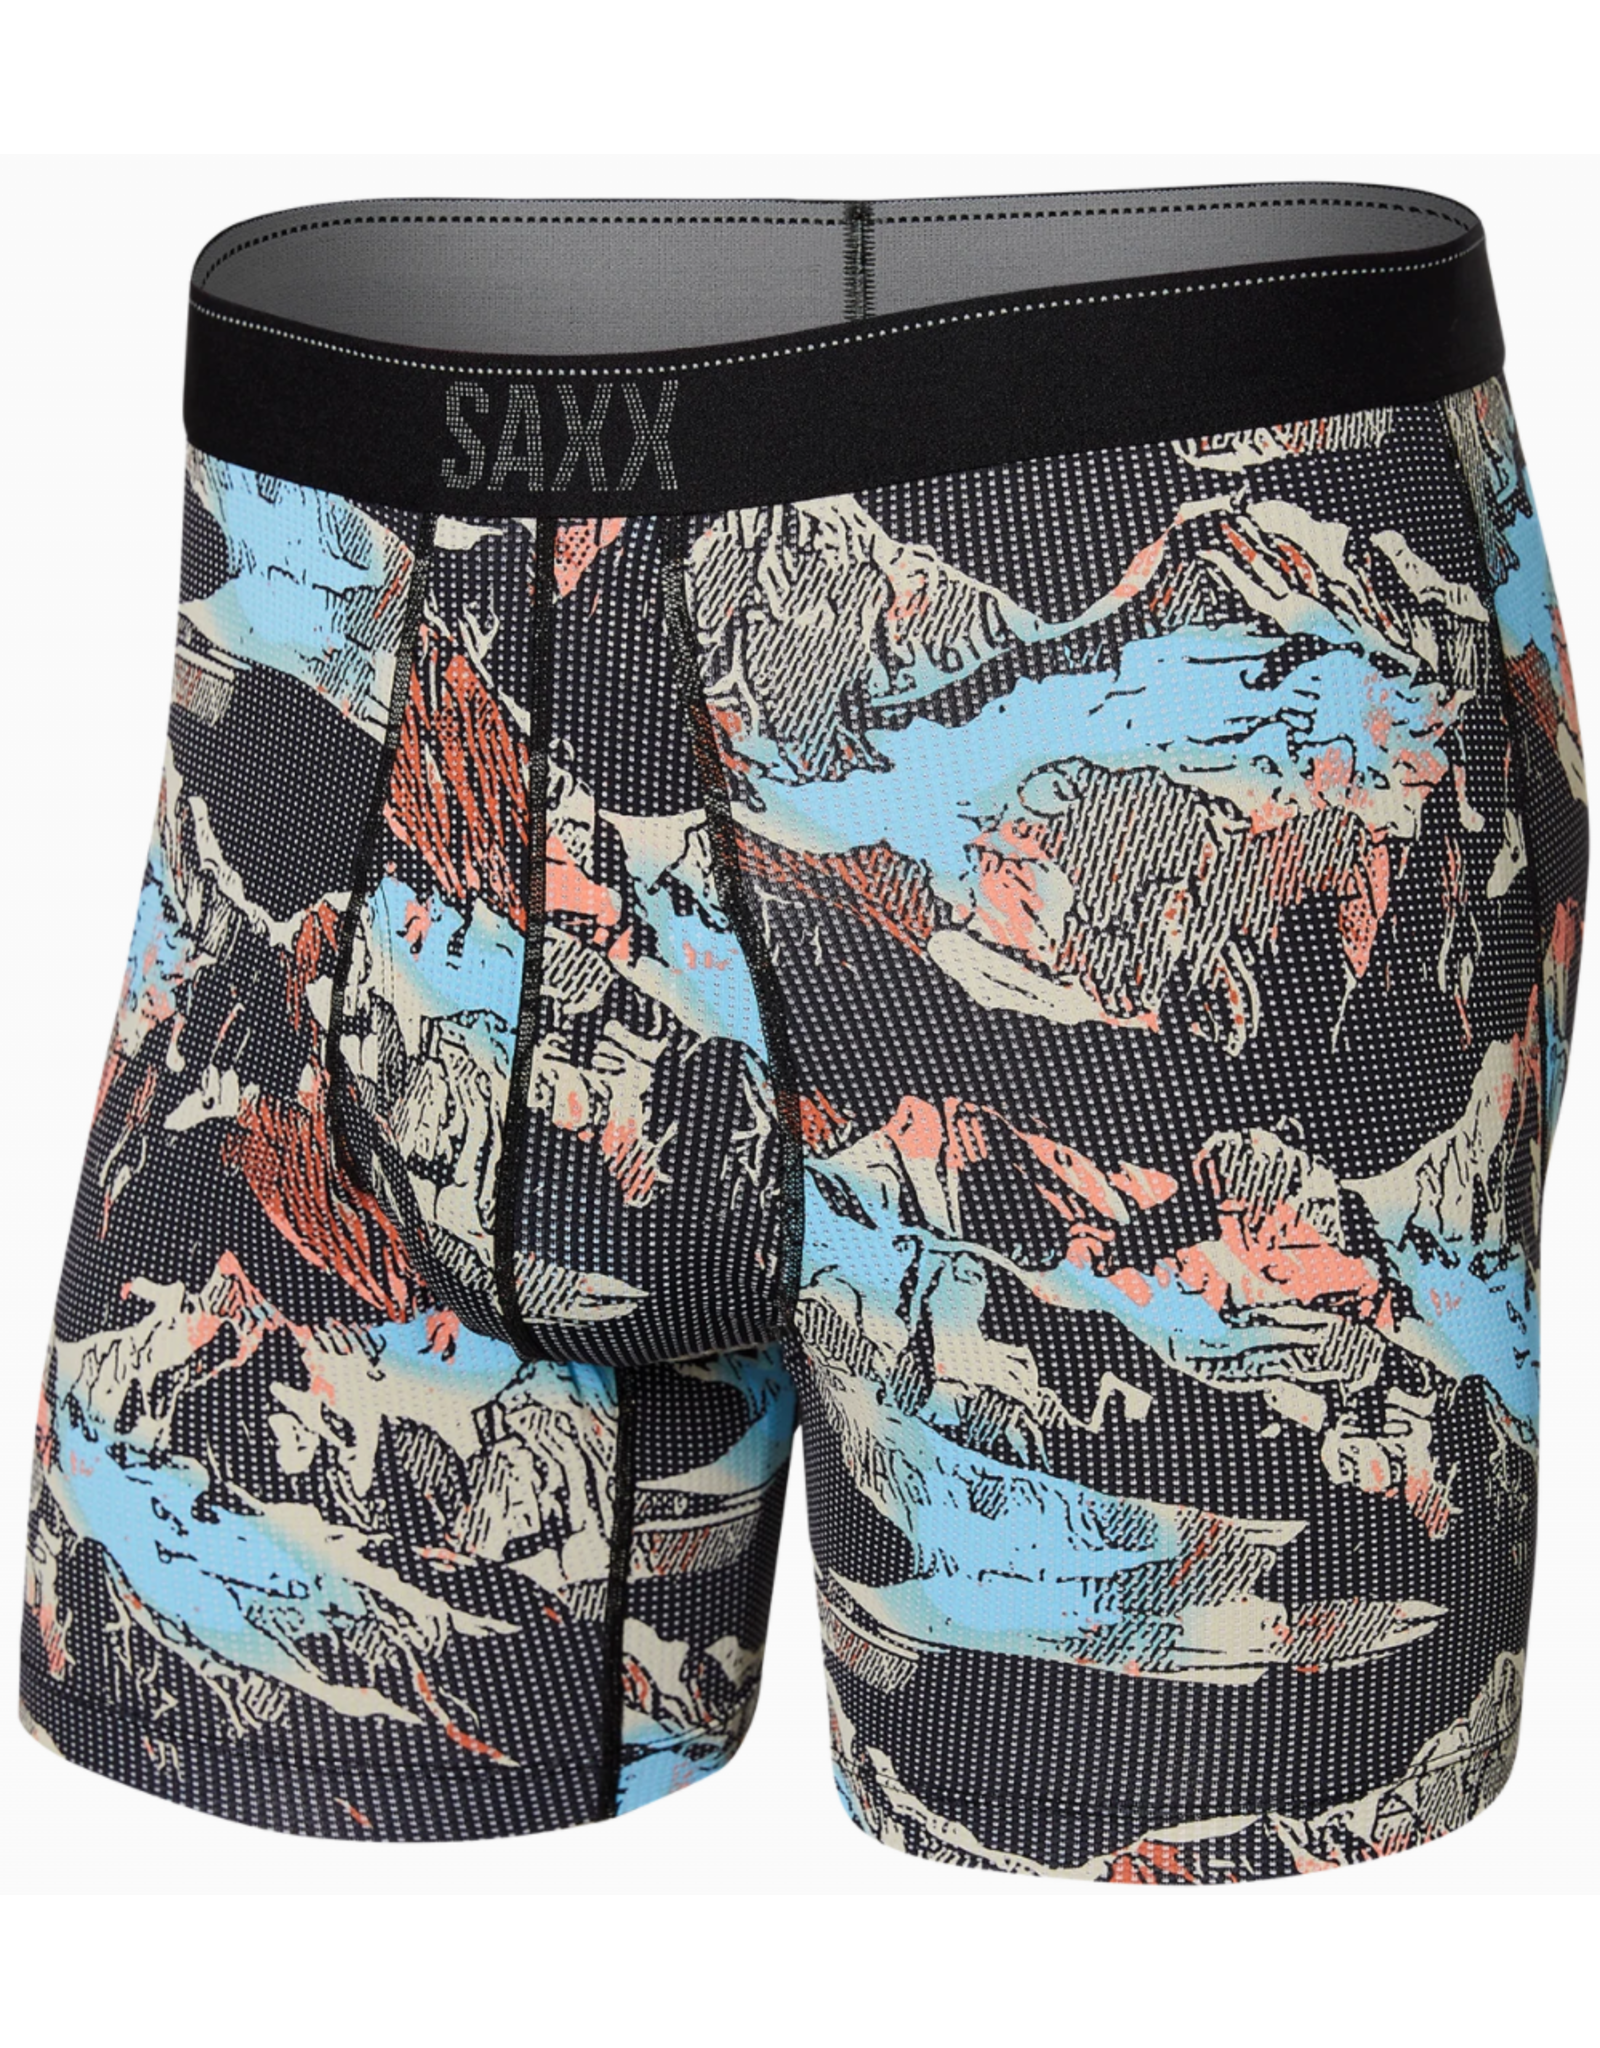 SAXX Underwear Co. Quest Boxer Brief